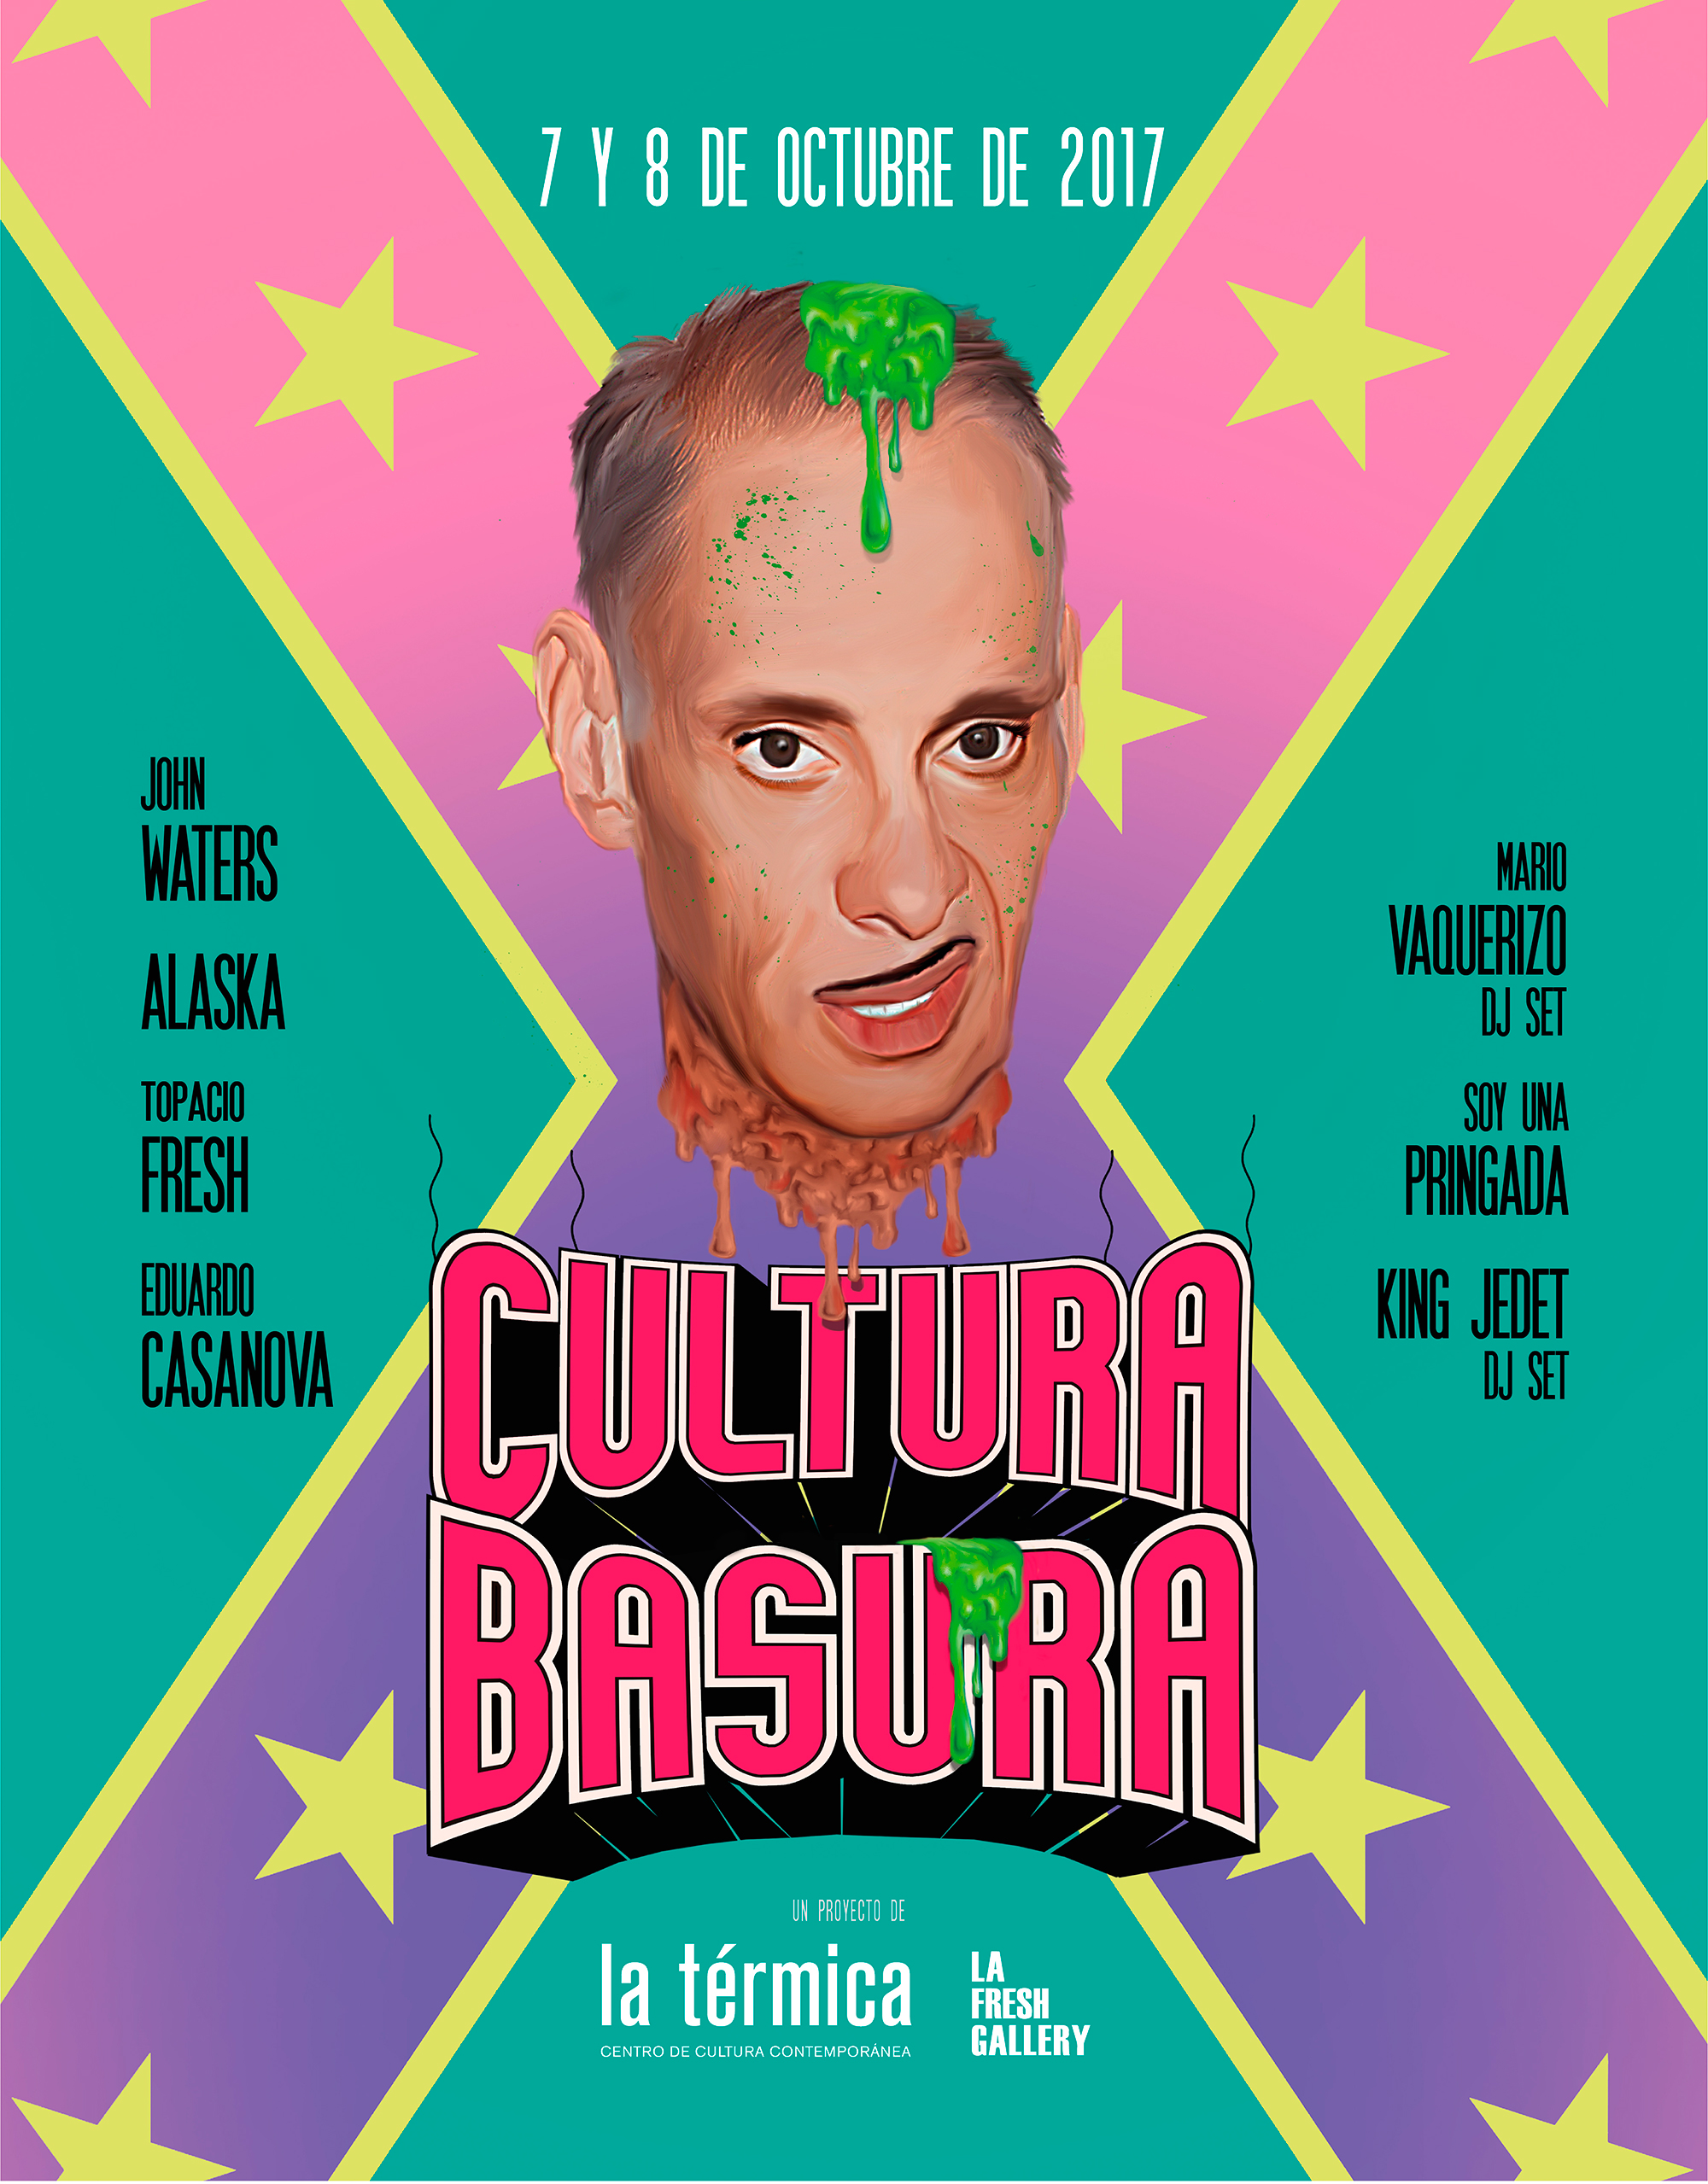 La ‘cultura basura’ llega a La Térmica de Málaga con John Waters